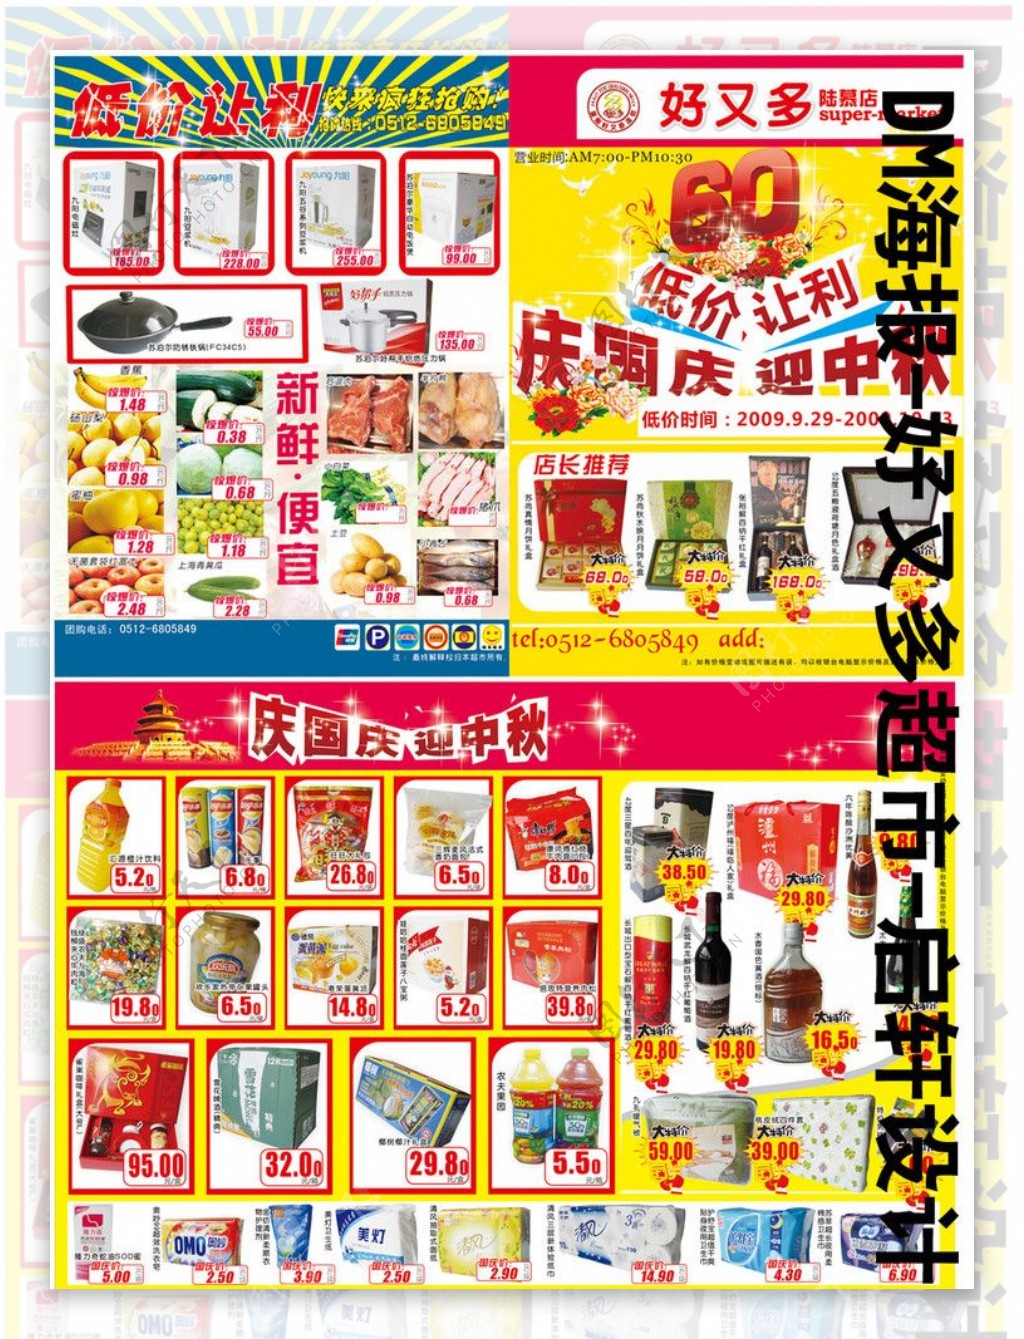 10月1日好友多陆慕店超市低价让利dm海报